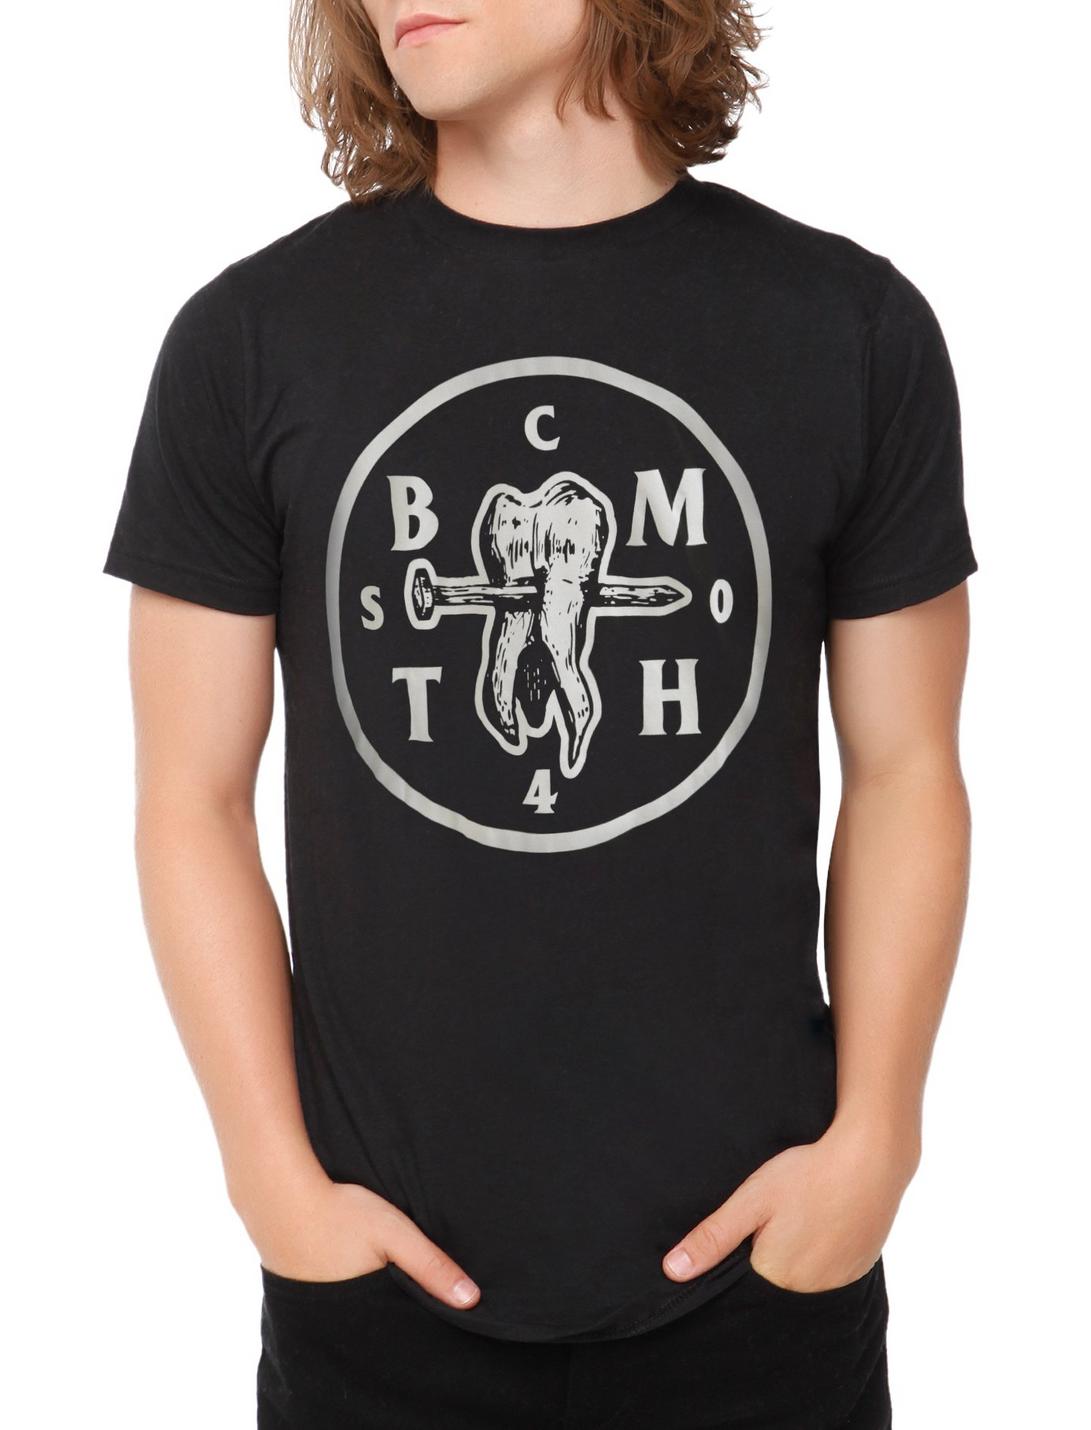 Bring Me The Horizon Tooth & Nail T-Shirt, BLACK, hi-res